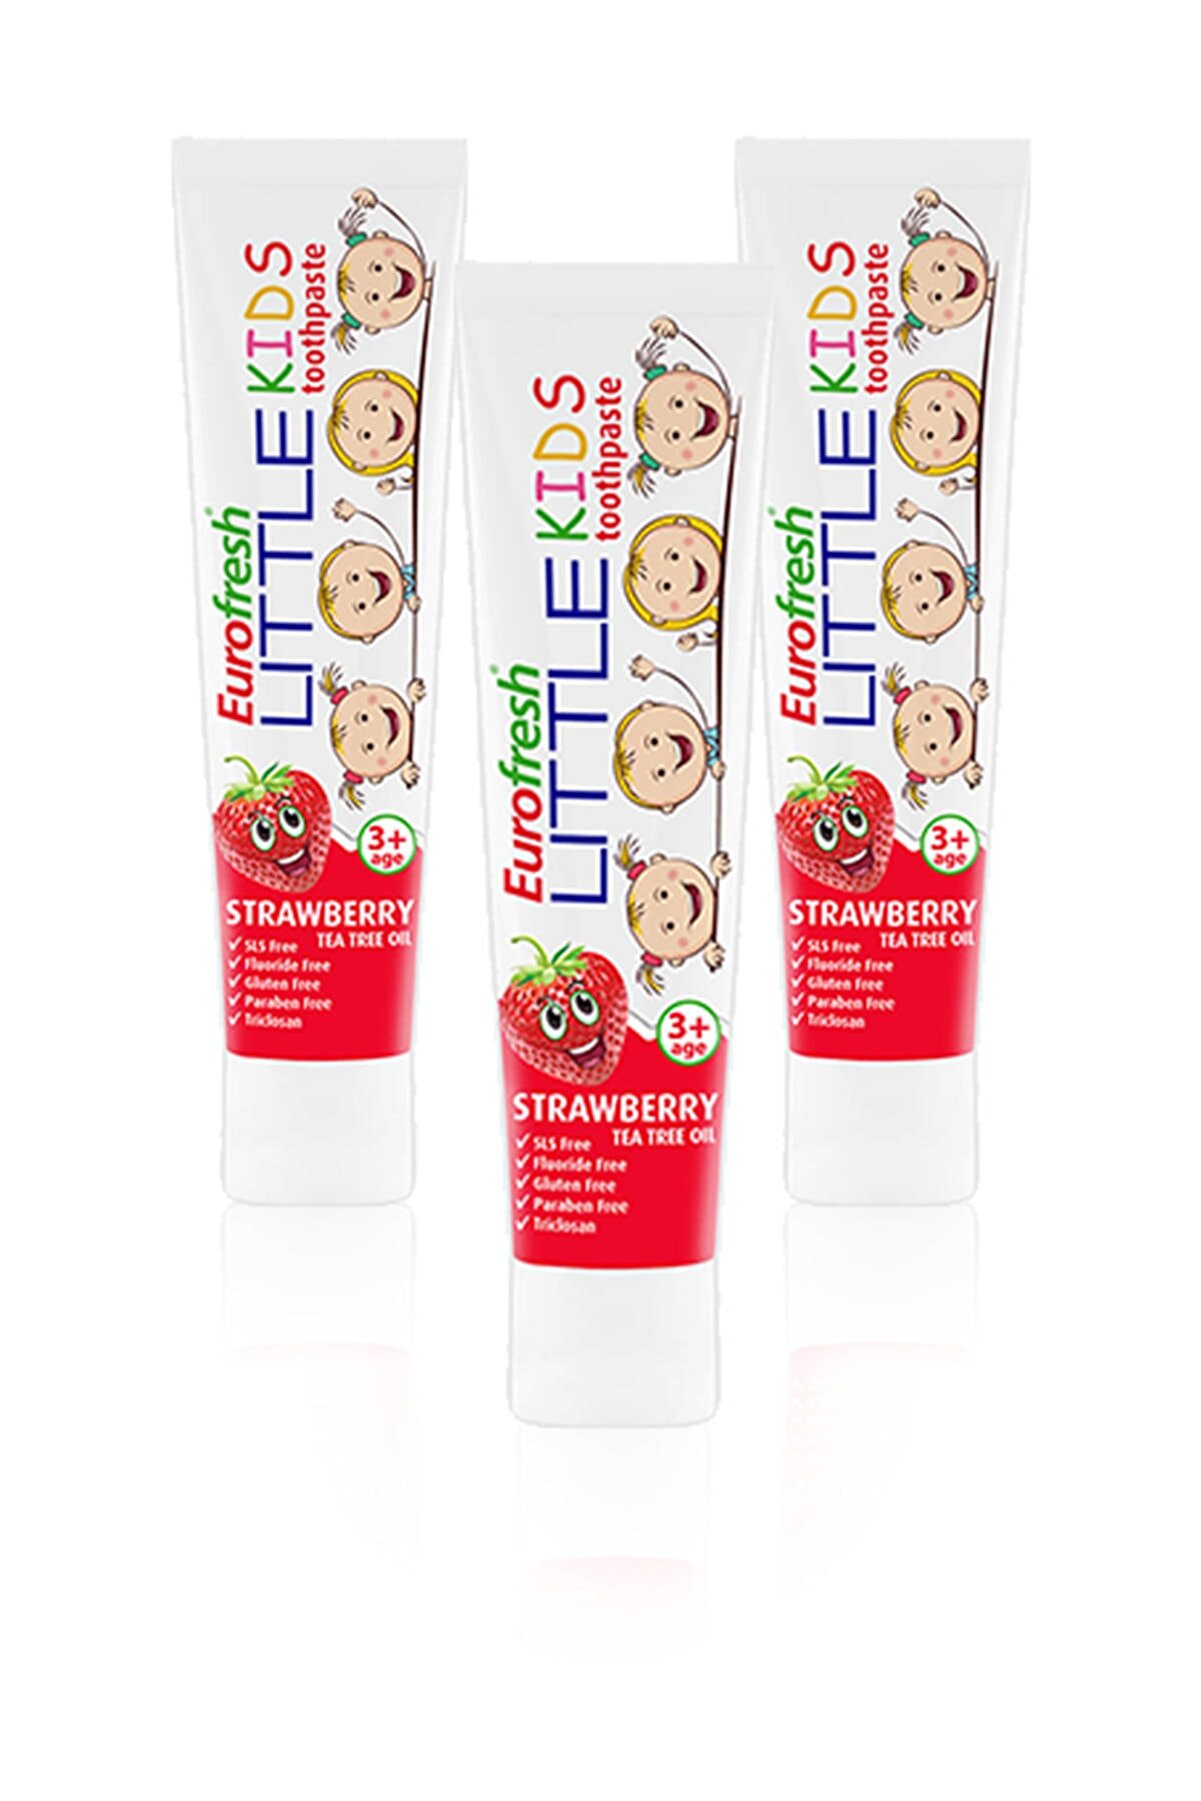 Farmasi Eurofresh Little Kids 3 Yaş Üzeri Çilek Aromalı Diş Macunu 50gr x 3 Adet